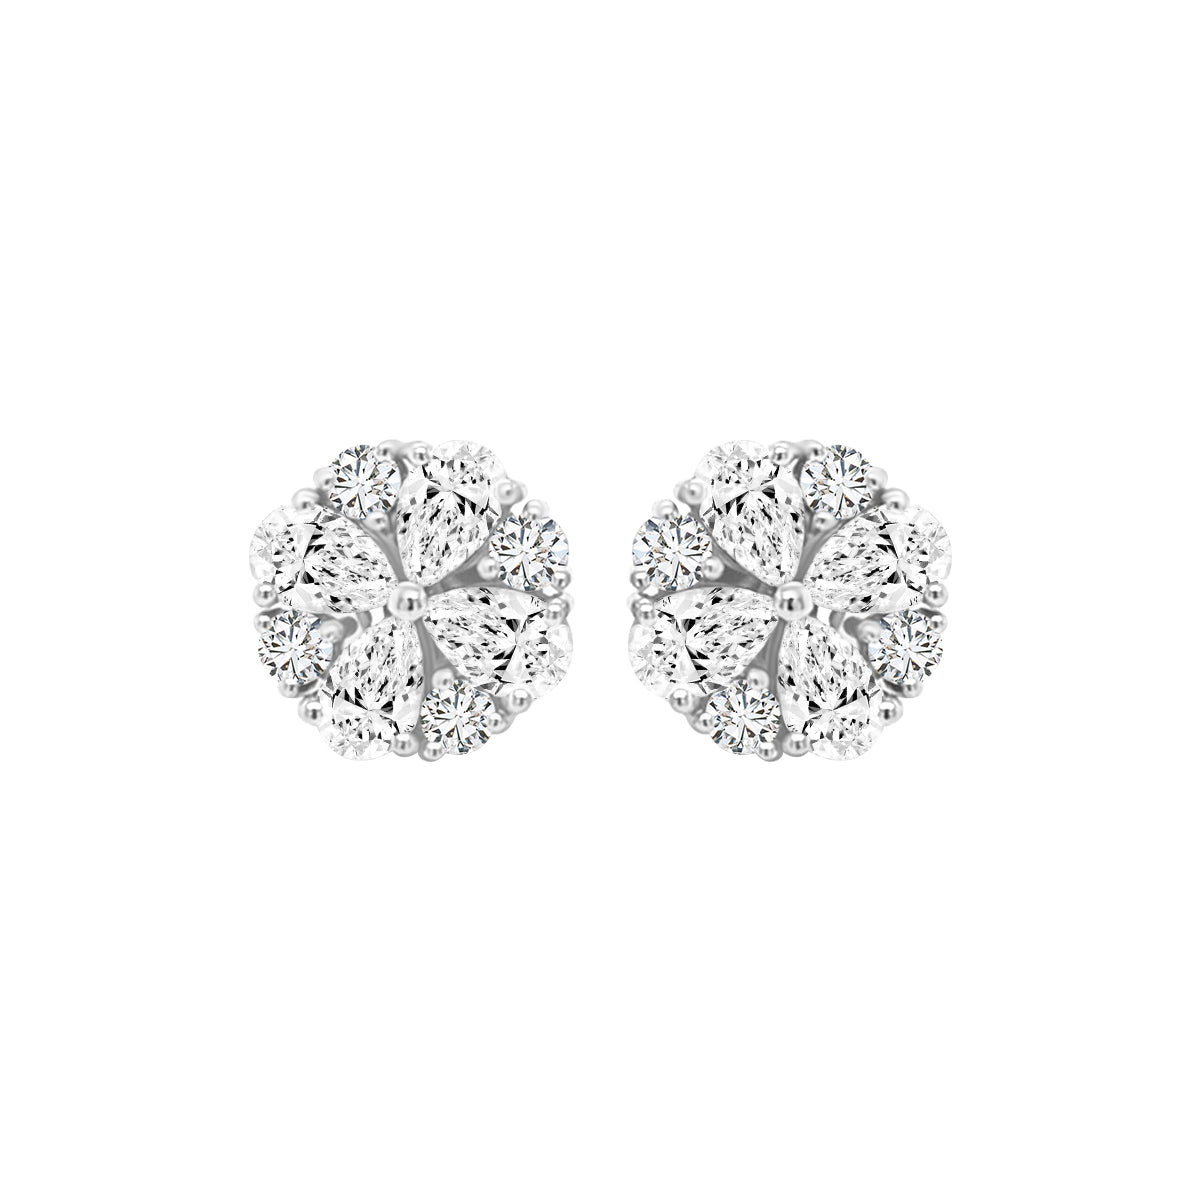 Floral, Flower Design Diamond Stud Earrings In 18k White Gold.